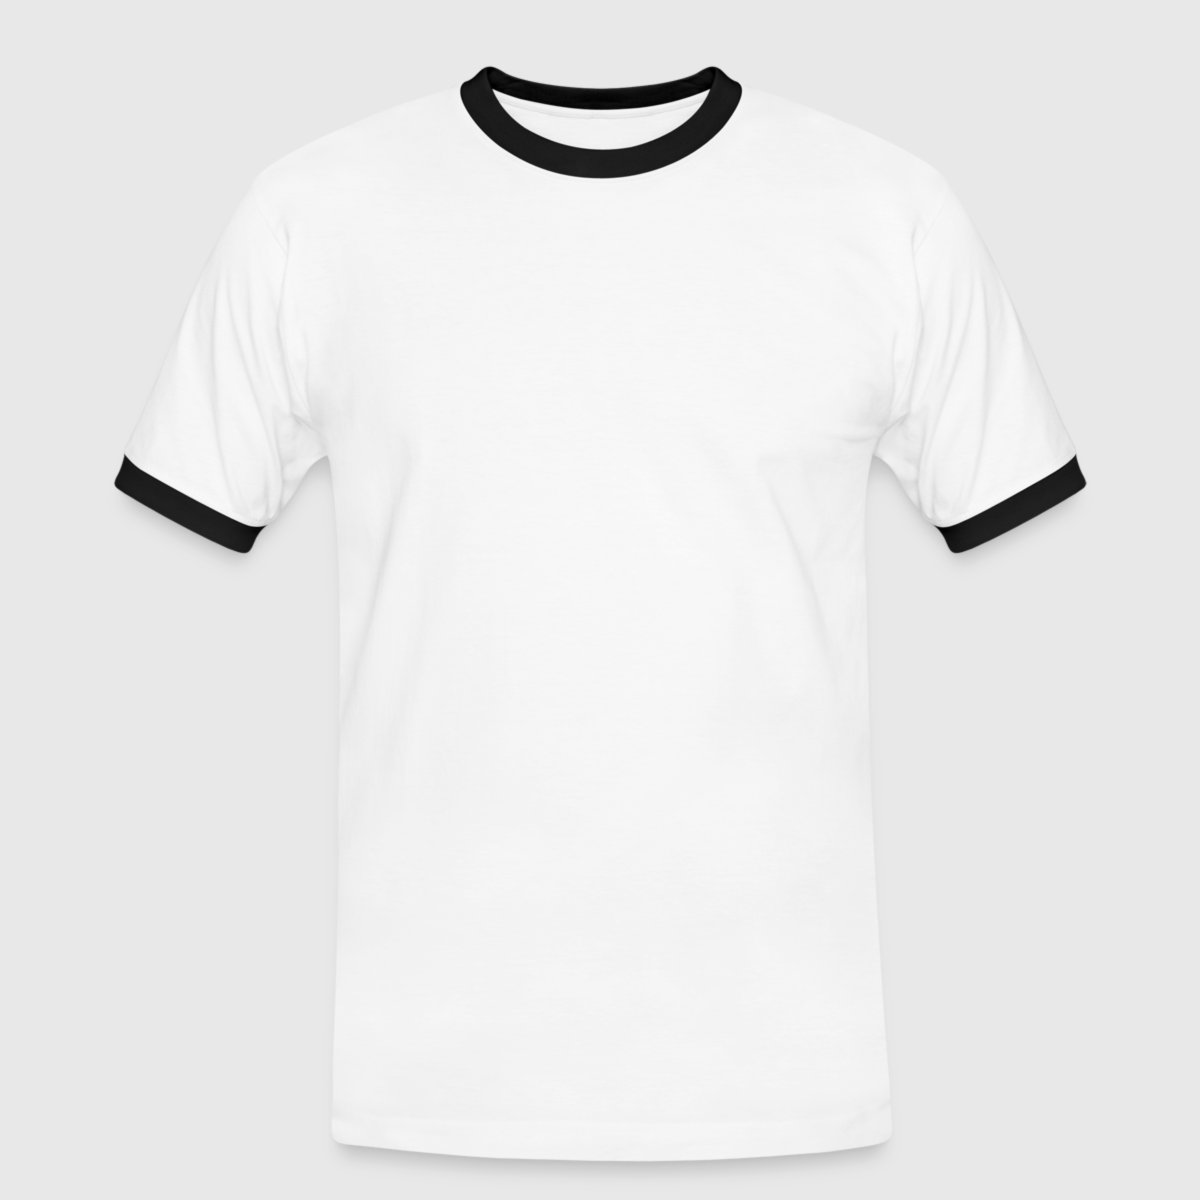 Männer Kontrast-T-Shirt - Vorne